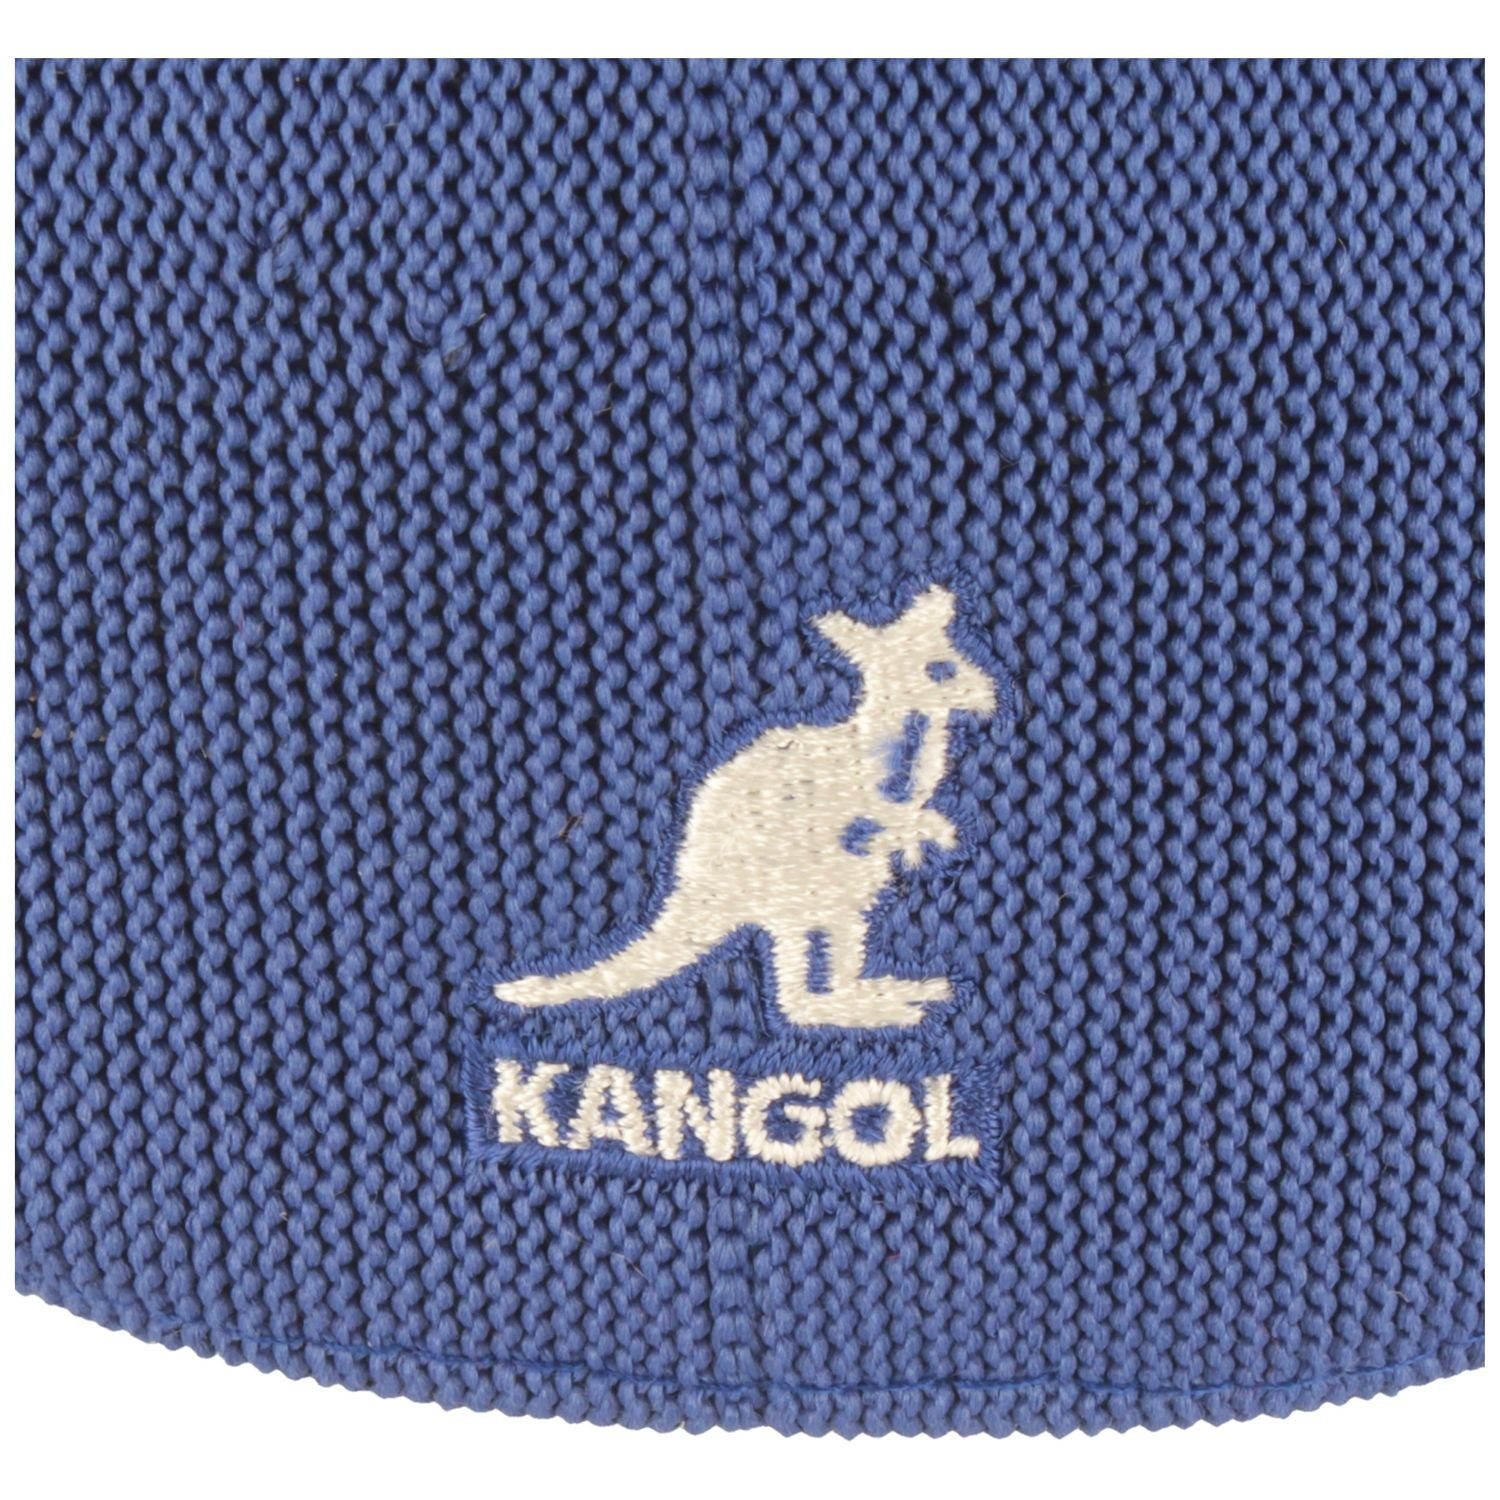 Schiebermütze Kangol 504 Tropic Cap SB402-Starry-Blue Ventair